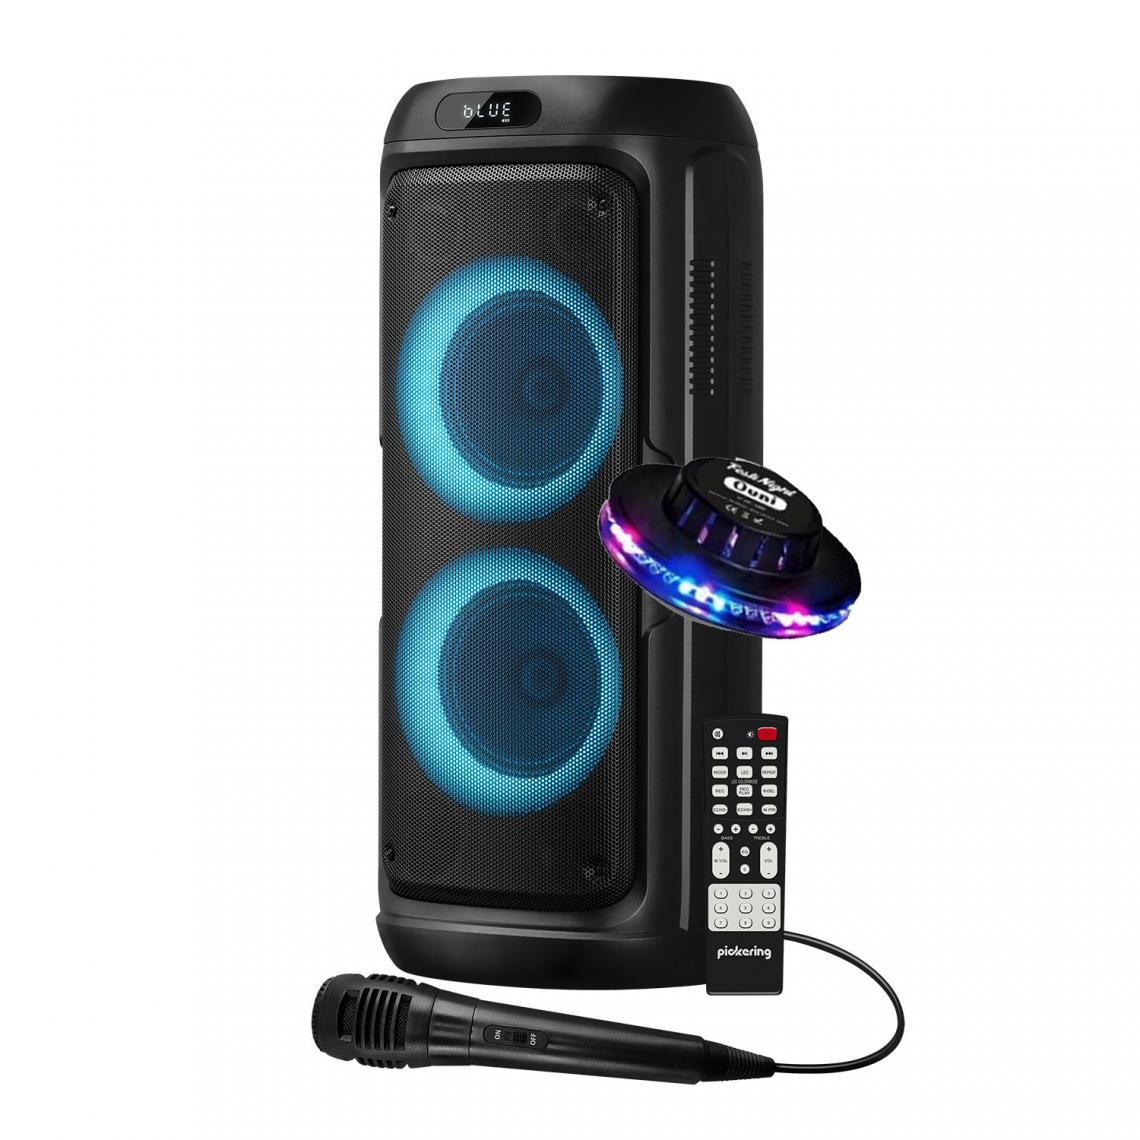 Festinight - Enceinte Karaoké Pickering ELEGANCE300, 300W Autonome sur batterie, Bluetooth USB / TWS Radio FM, Micro, Jeu de lumière OVNI LED - Packs sonorisation